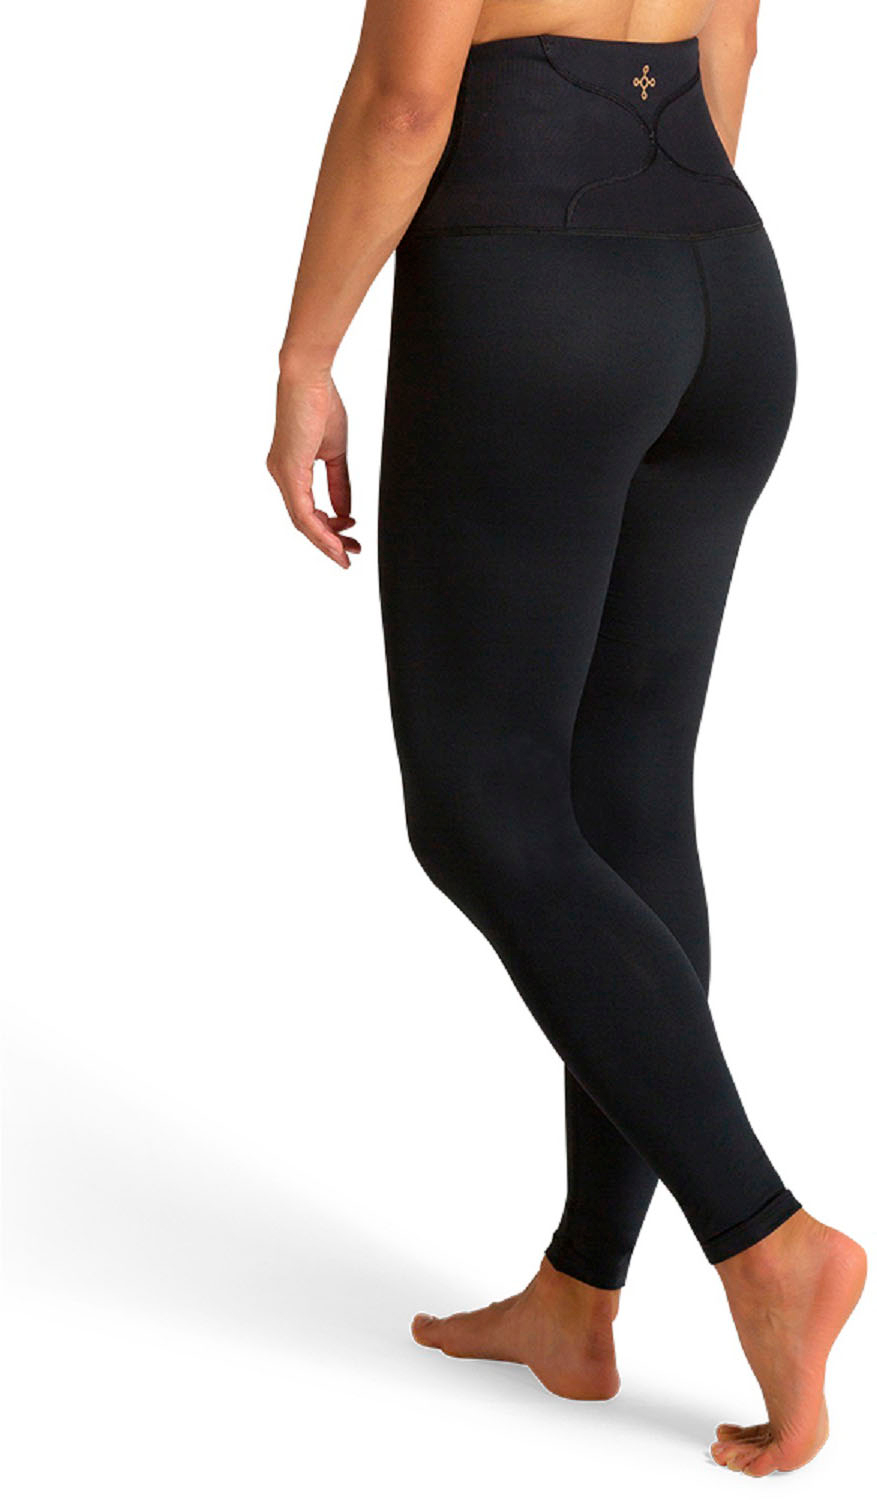 Best Buy: Tommie Copper Women's Lower Back Support Leggings Black  1522WR-0101-L